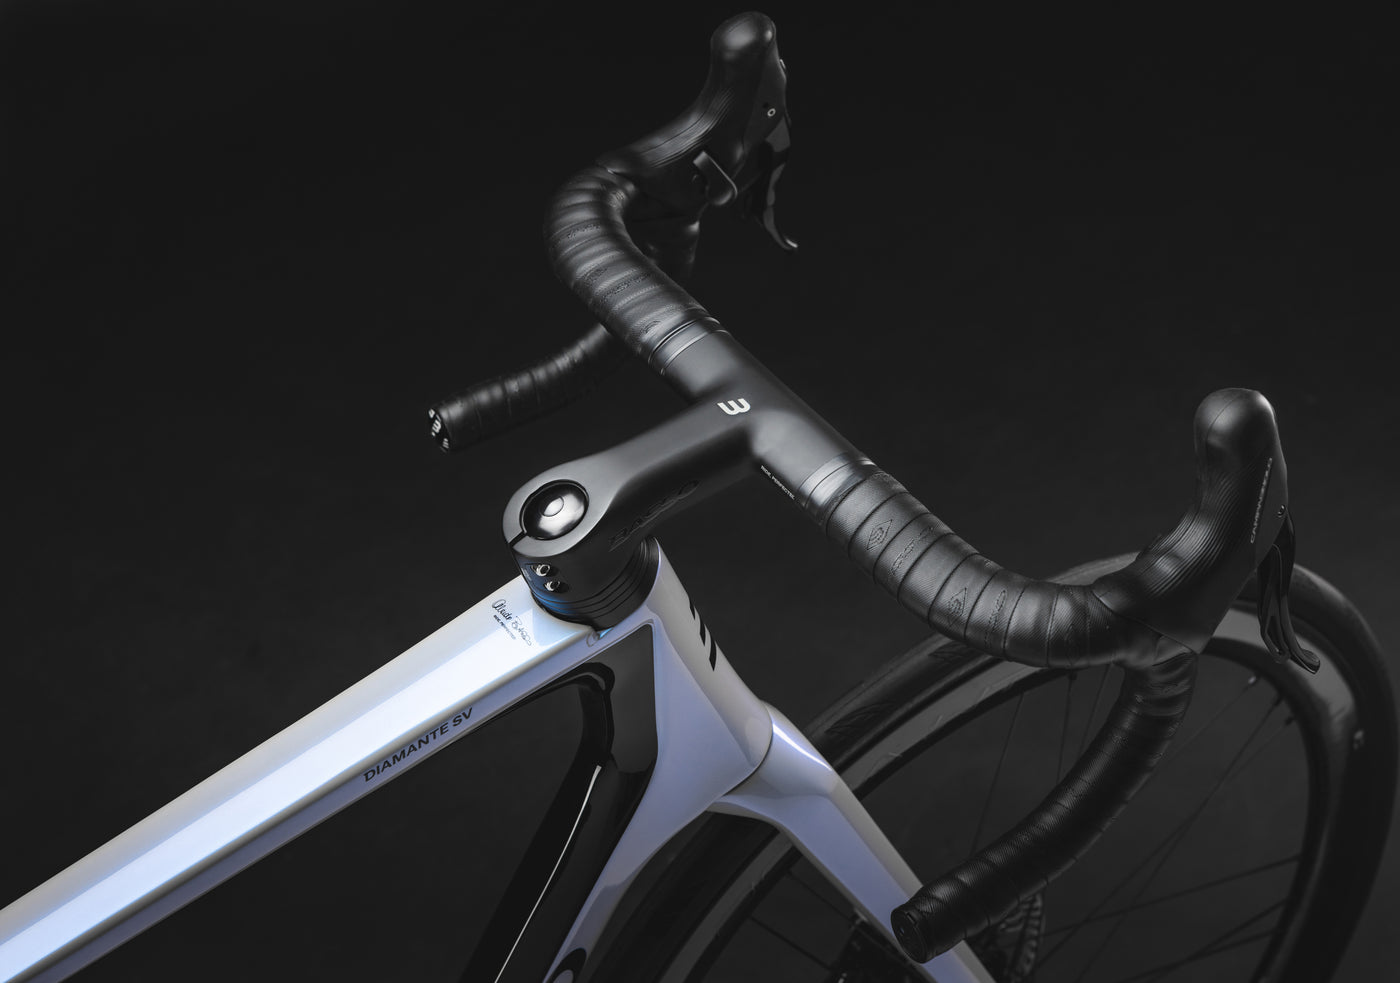 BASSO BIKES Diamante versatile Stable and responsive Road Racing Bike